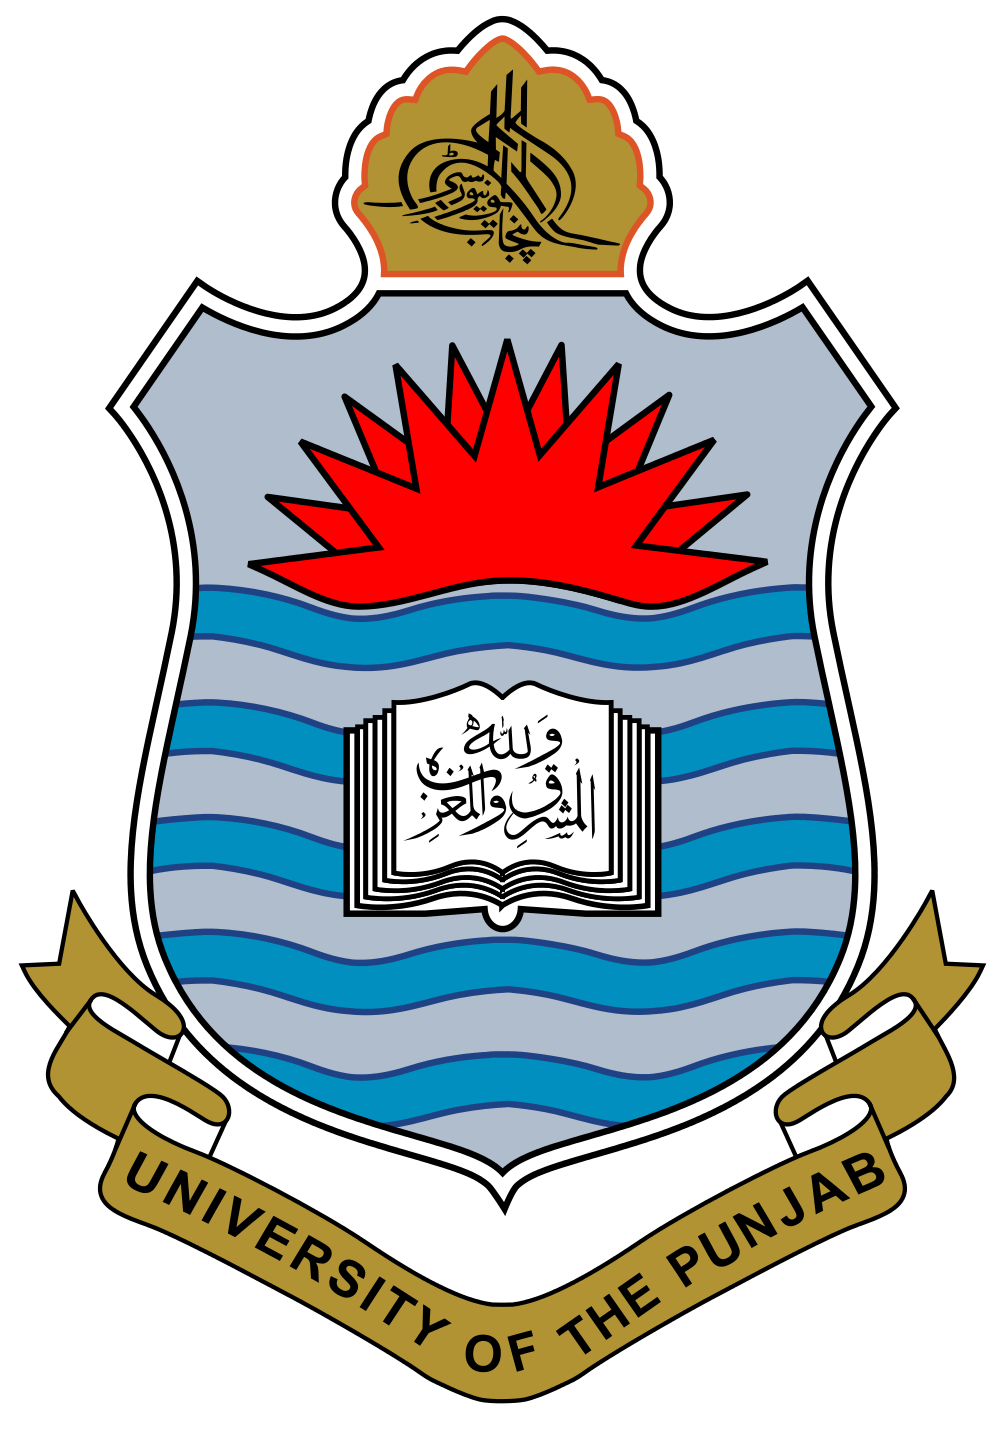 Punjab Logo - File:Punjab University Logo (without background).svg - Wikimedia Commons